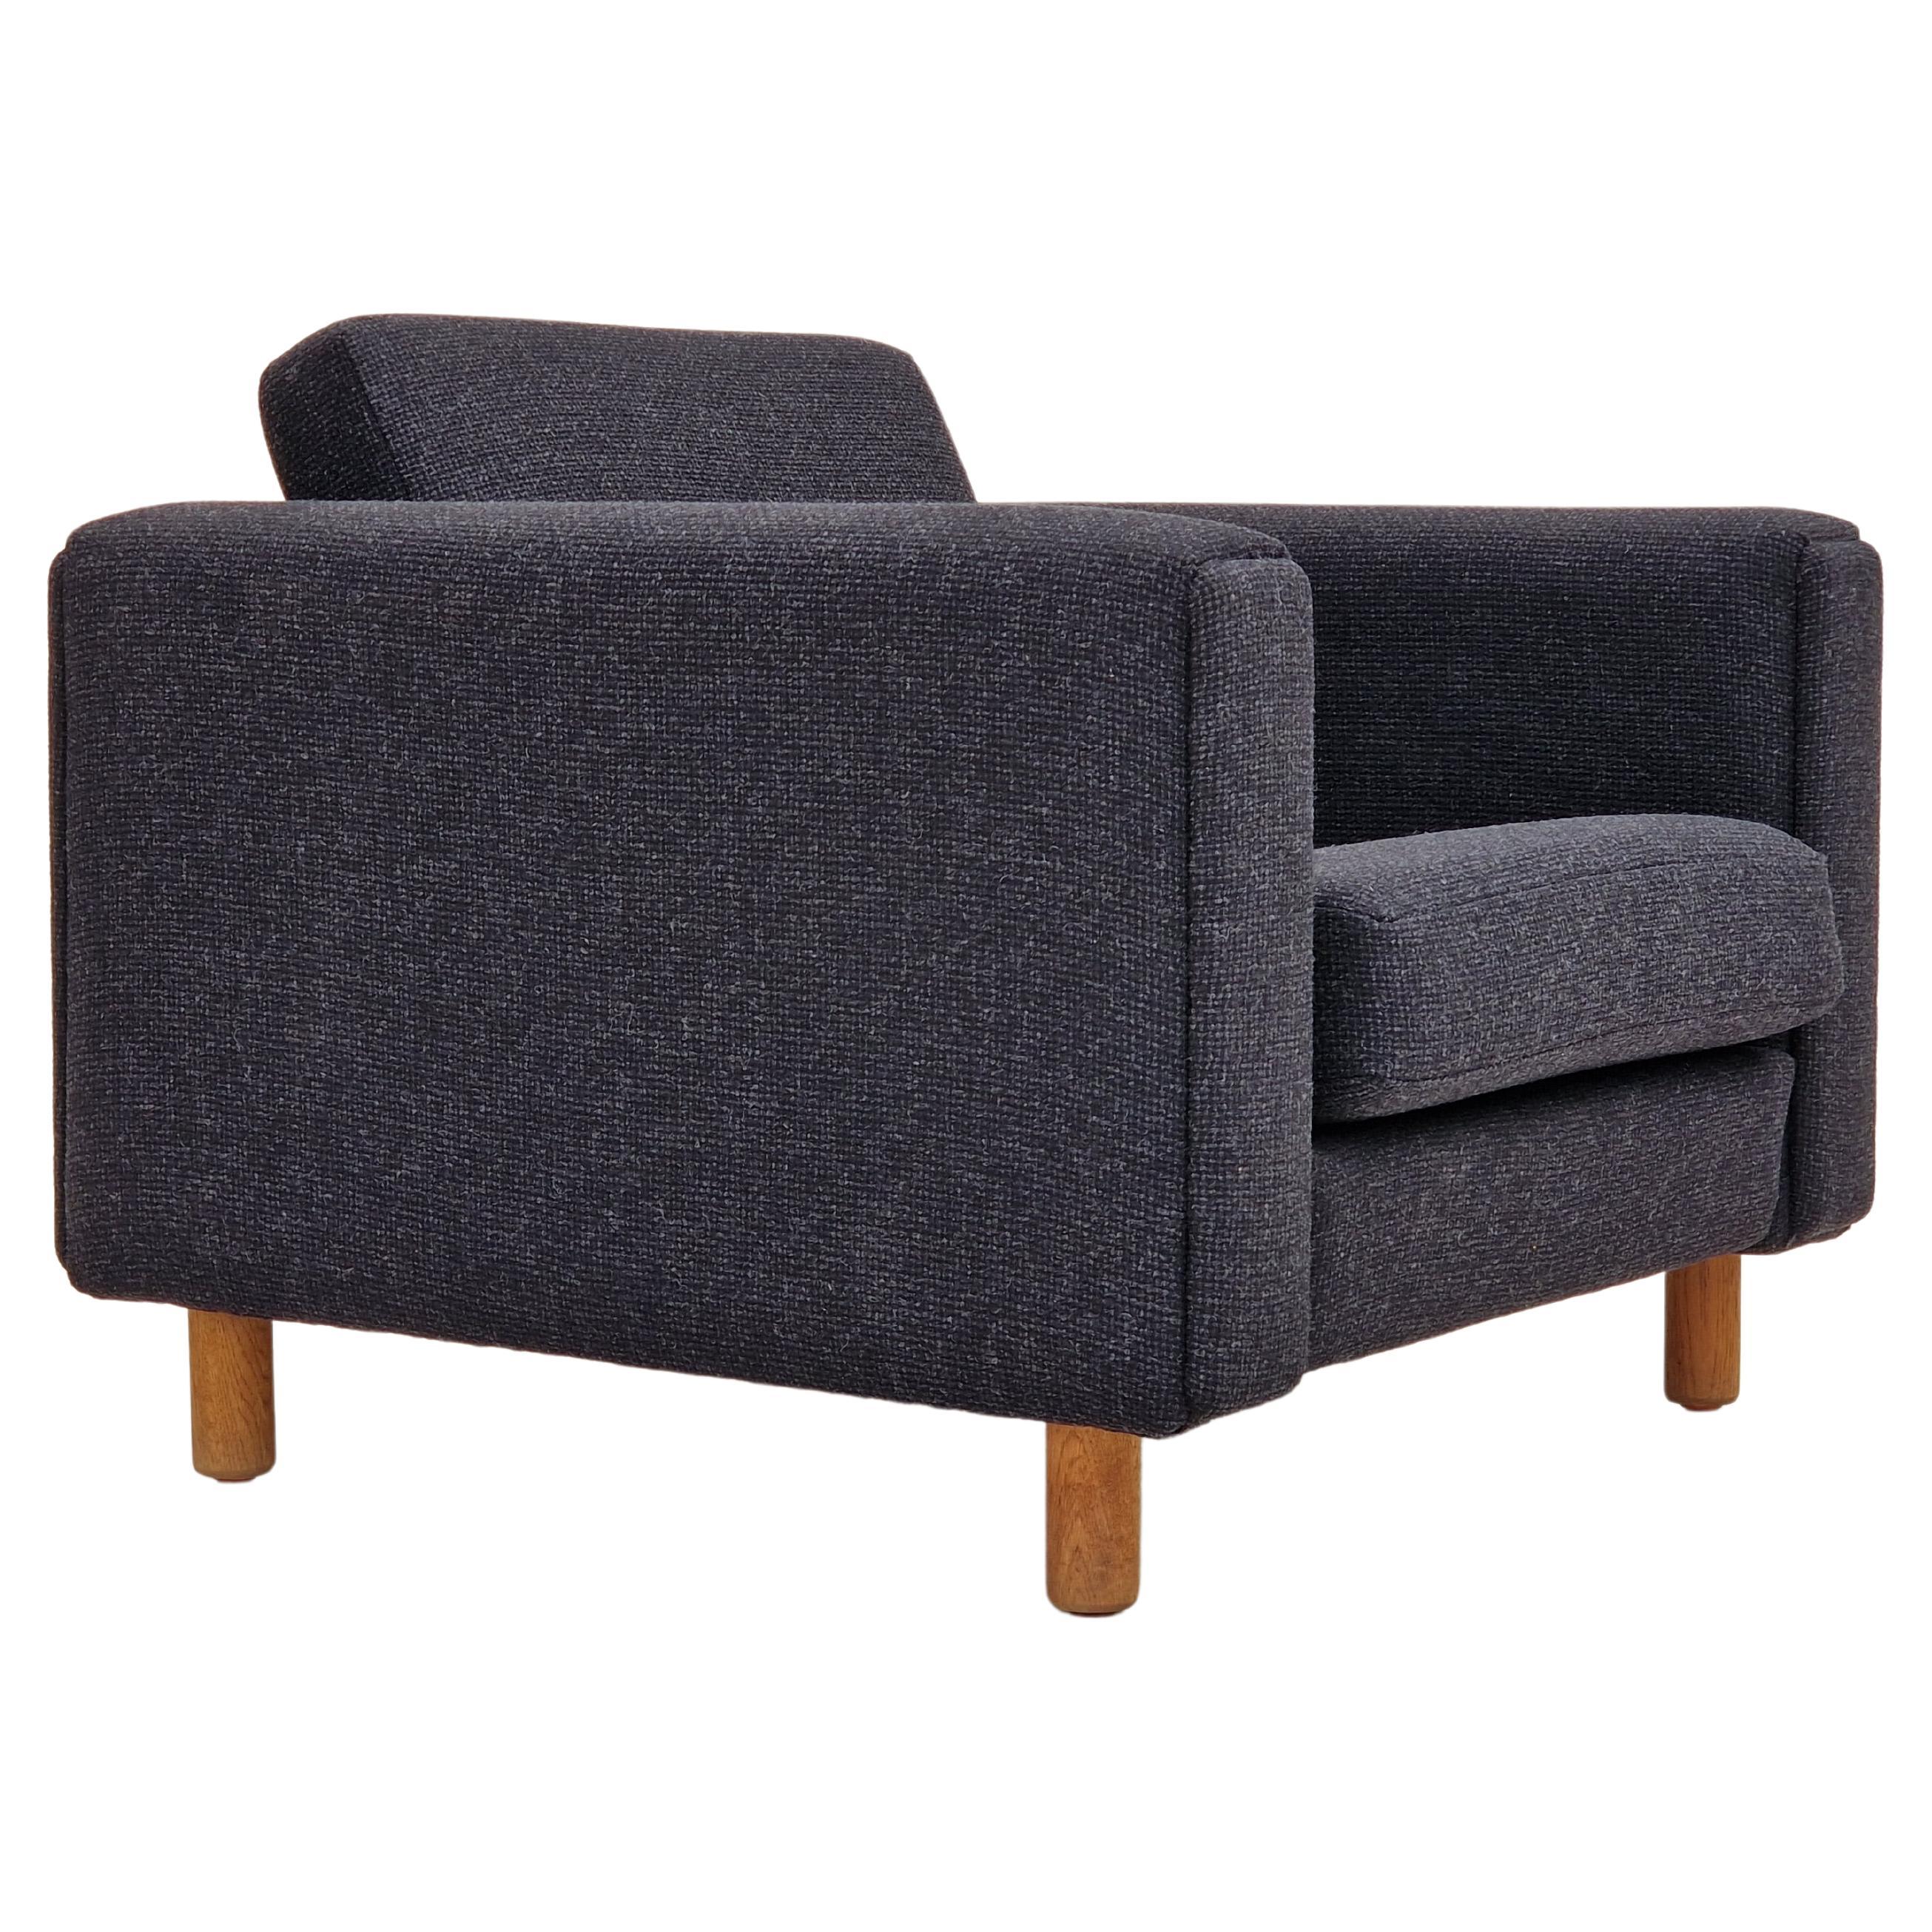 1970s, Danish design by H.J. Wegner, reupholstered armchair, model GE300.